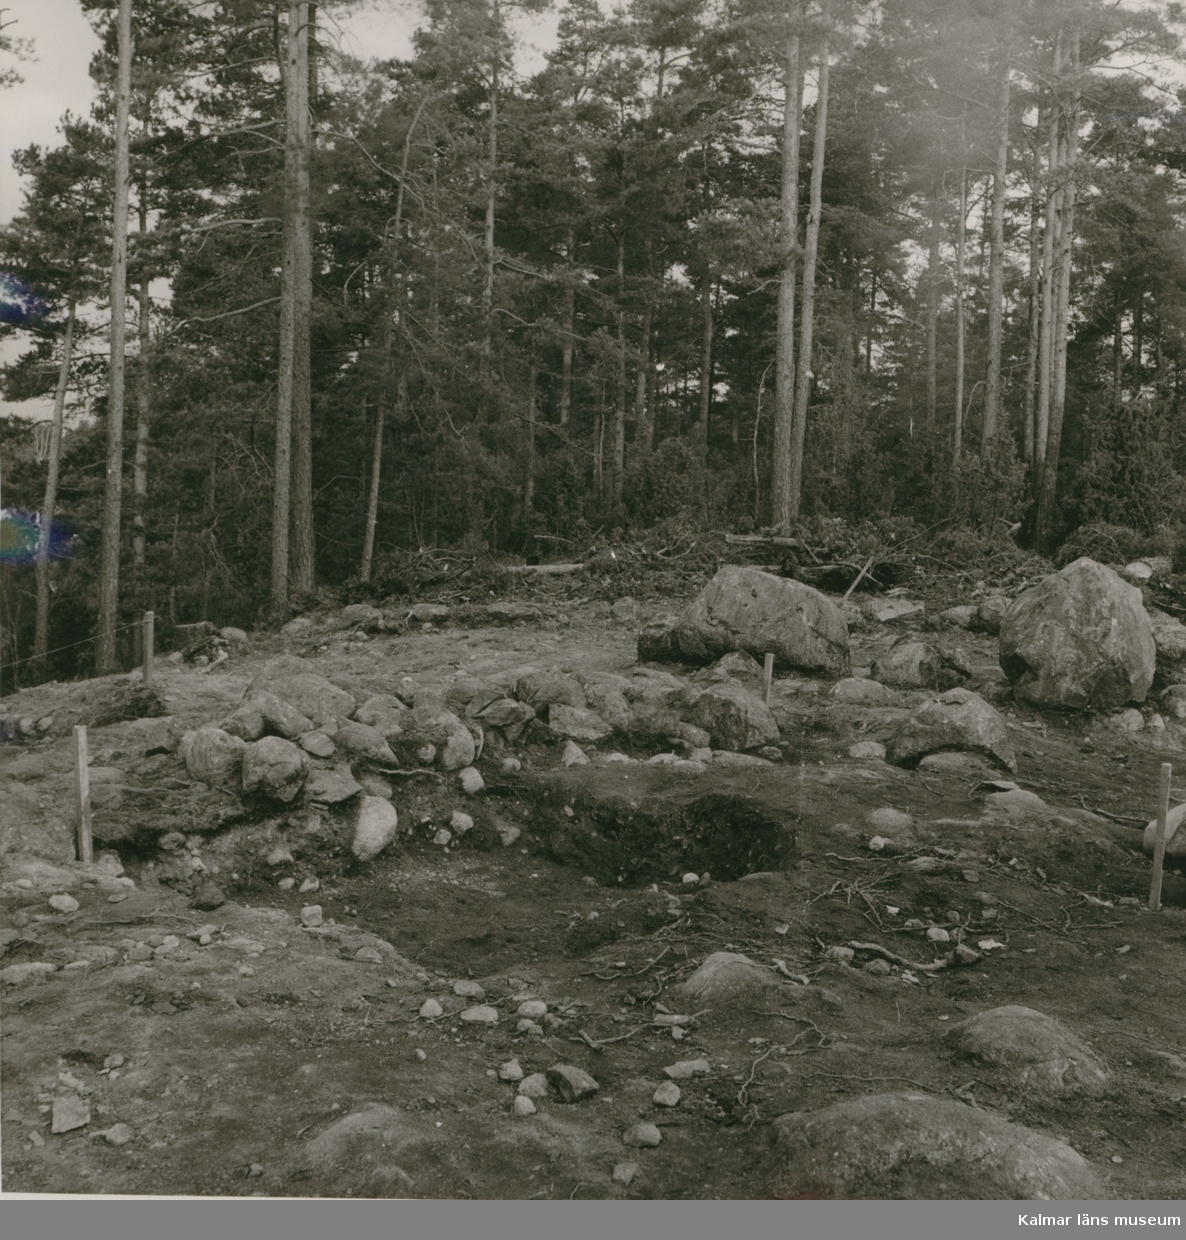 Röse, undersökt 1956 av Ekelund och KG. Petersson.

Bottnen under rösets mittparti.

Foto ATA.